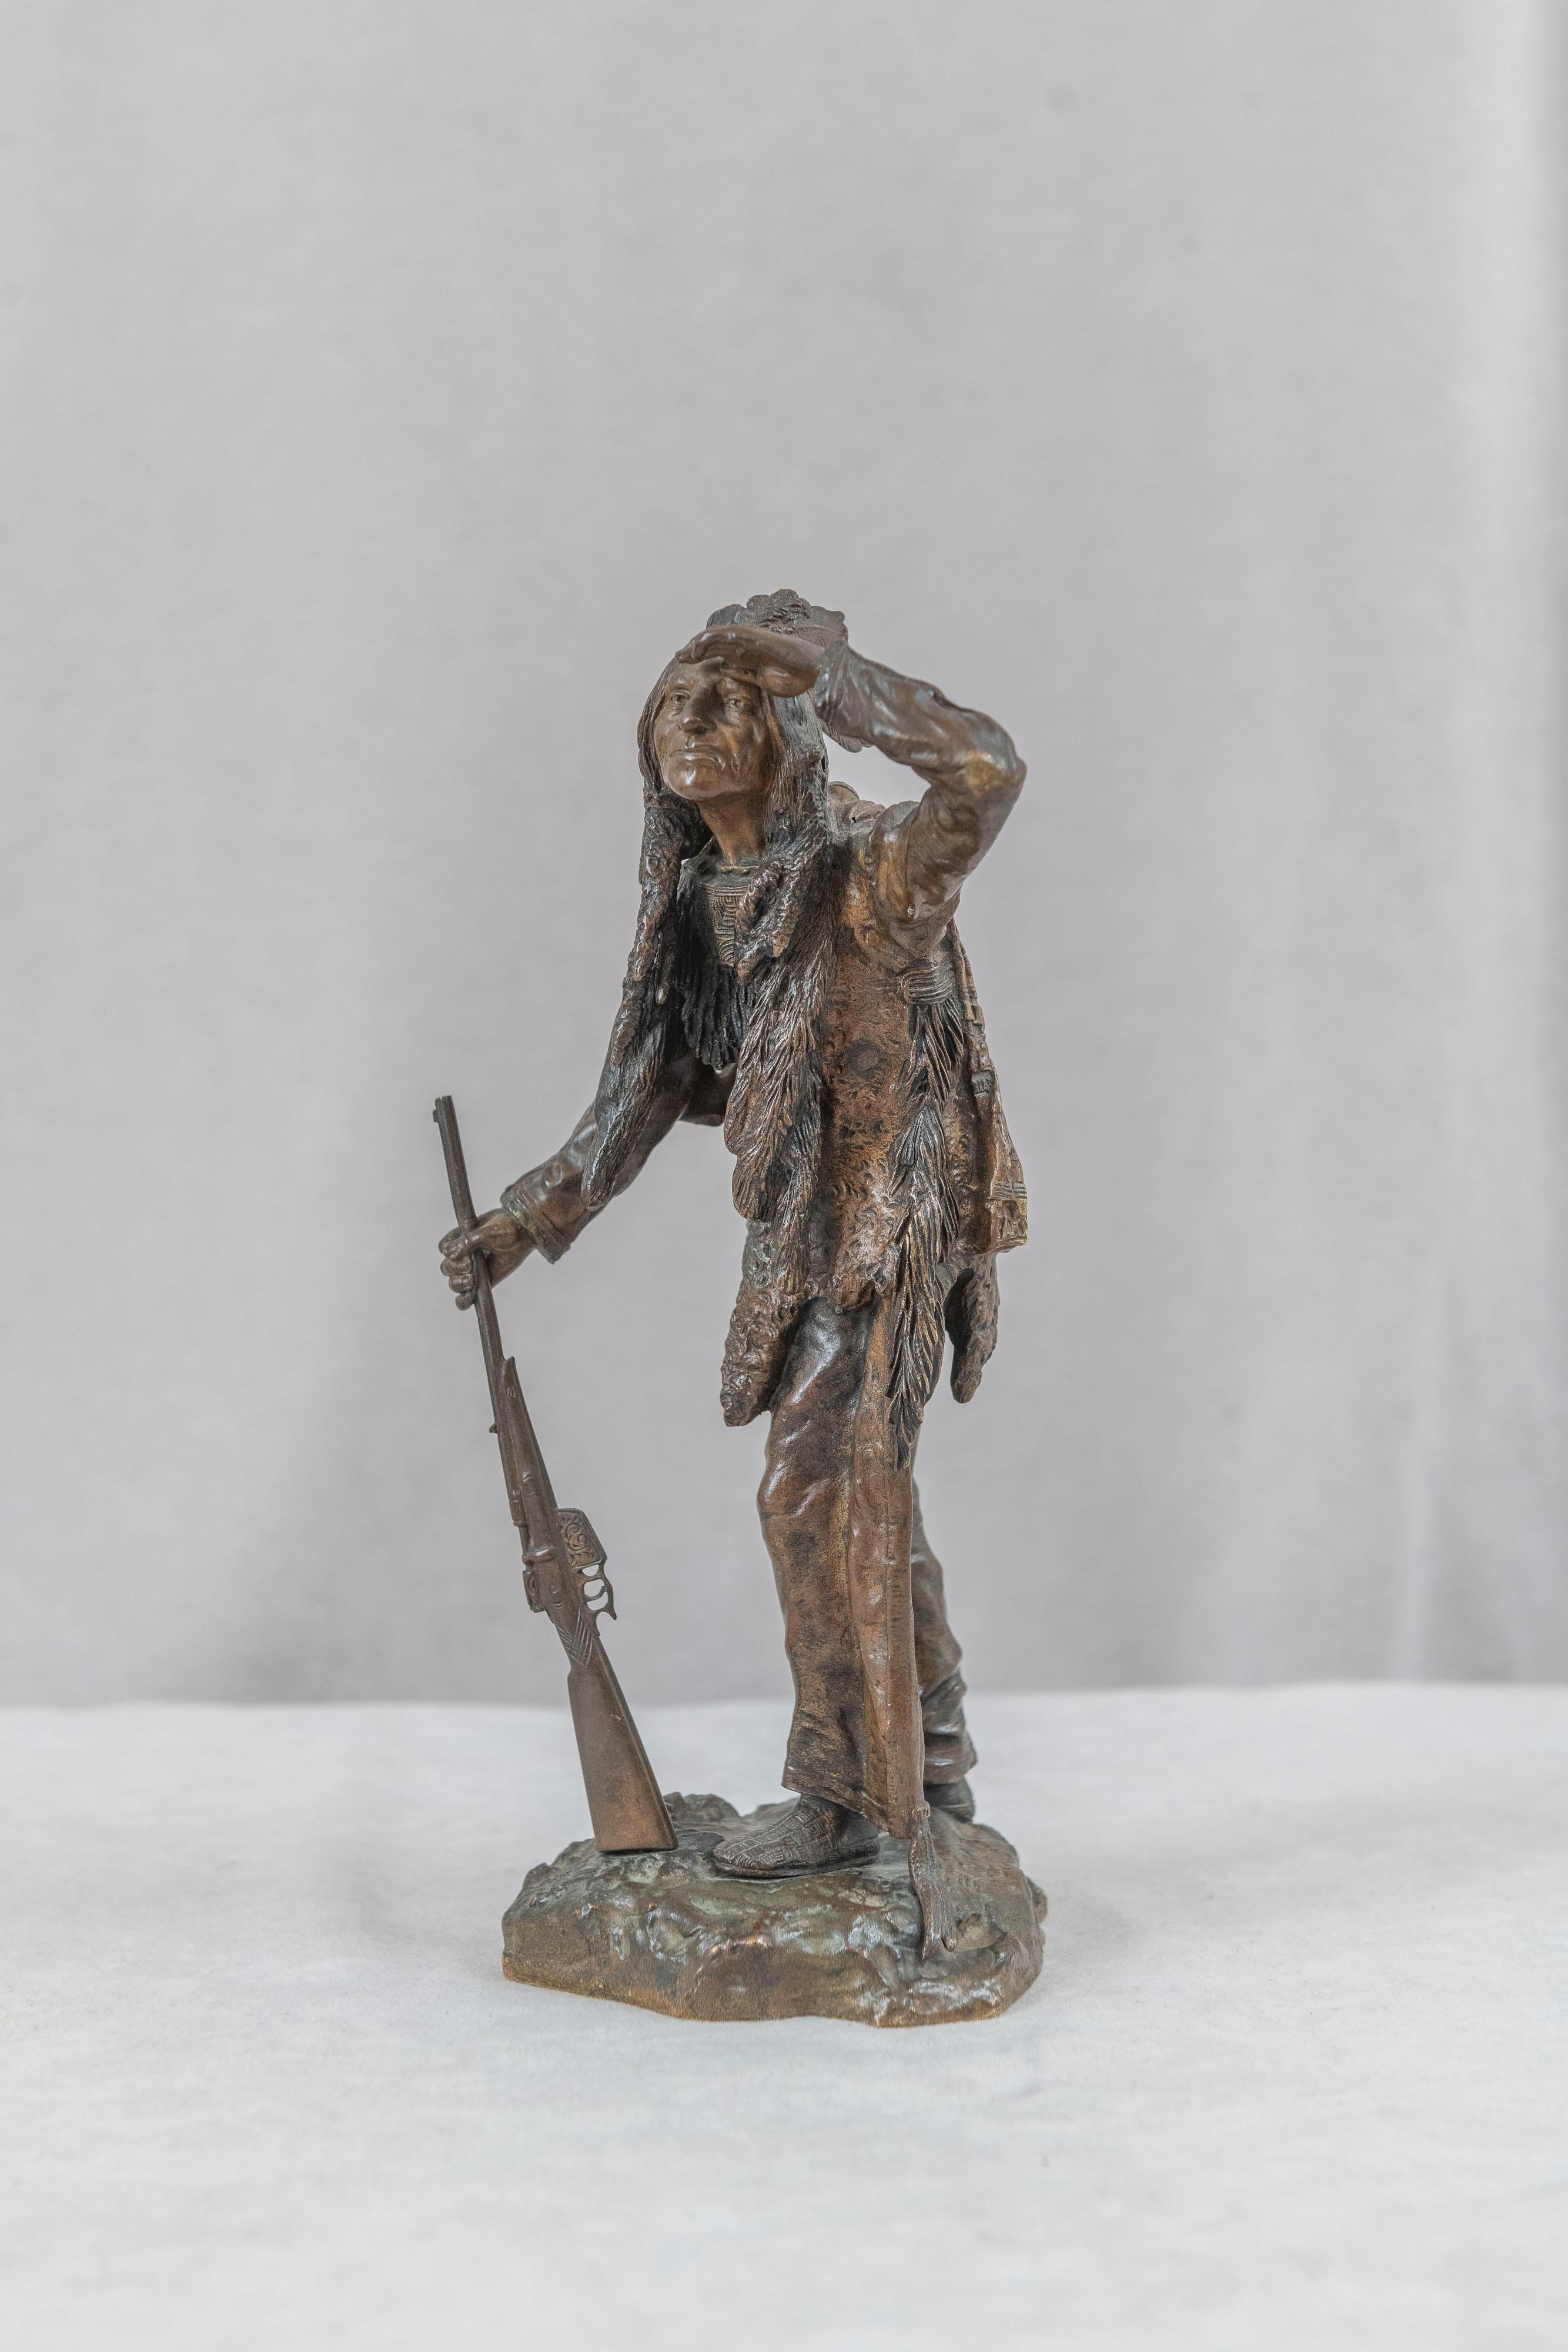  Cet exceptionnel moulage en bronze d'un Indien d'Amérique debout avec son fusil a été réalisé par le célèbre artiste autrichien Carl Kauba (1865-1922). Connu principalement pour ses bronzes finement détaillés d'Indiens, bien qu'il ait réalisé